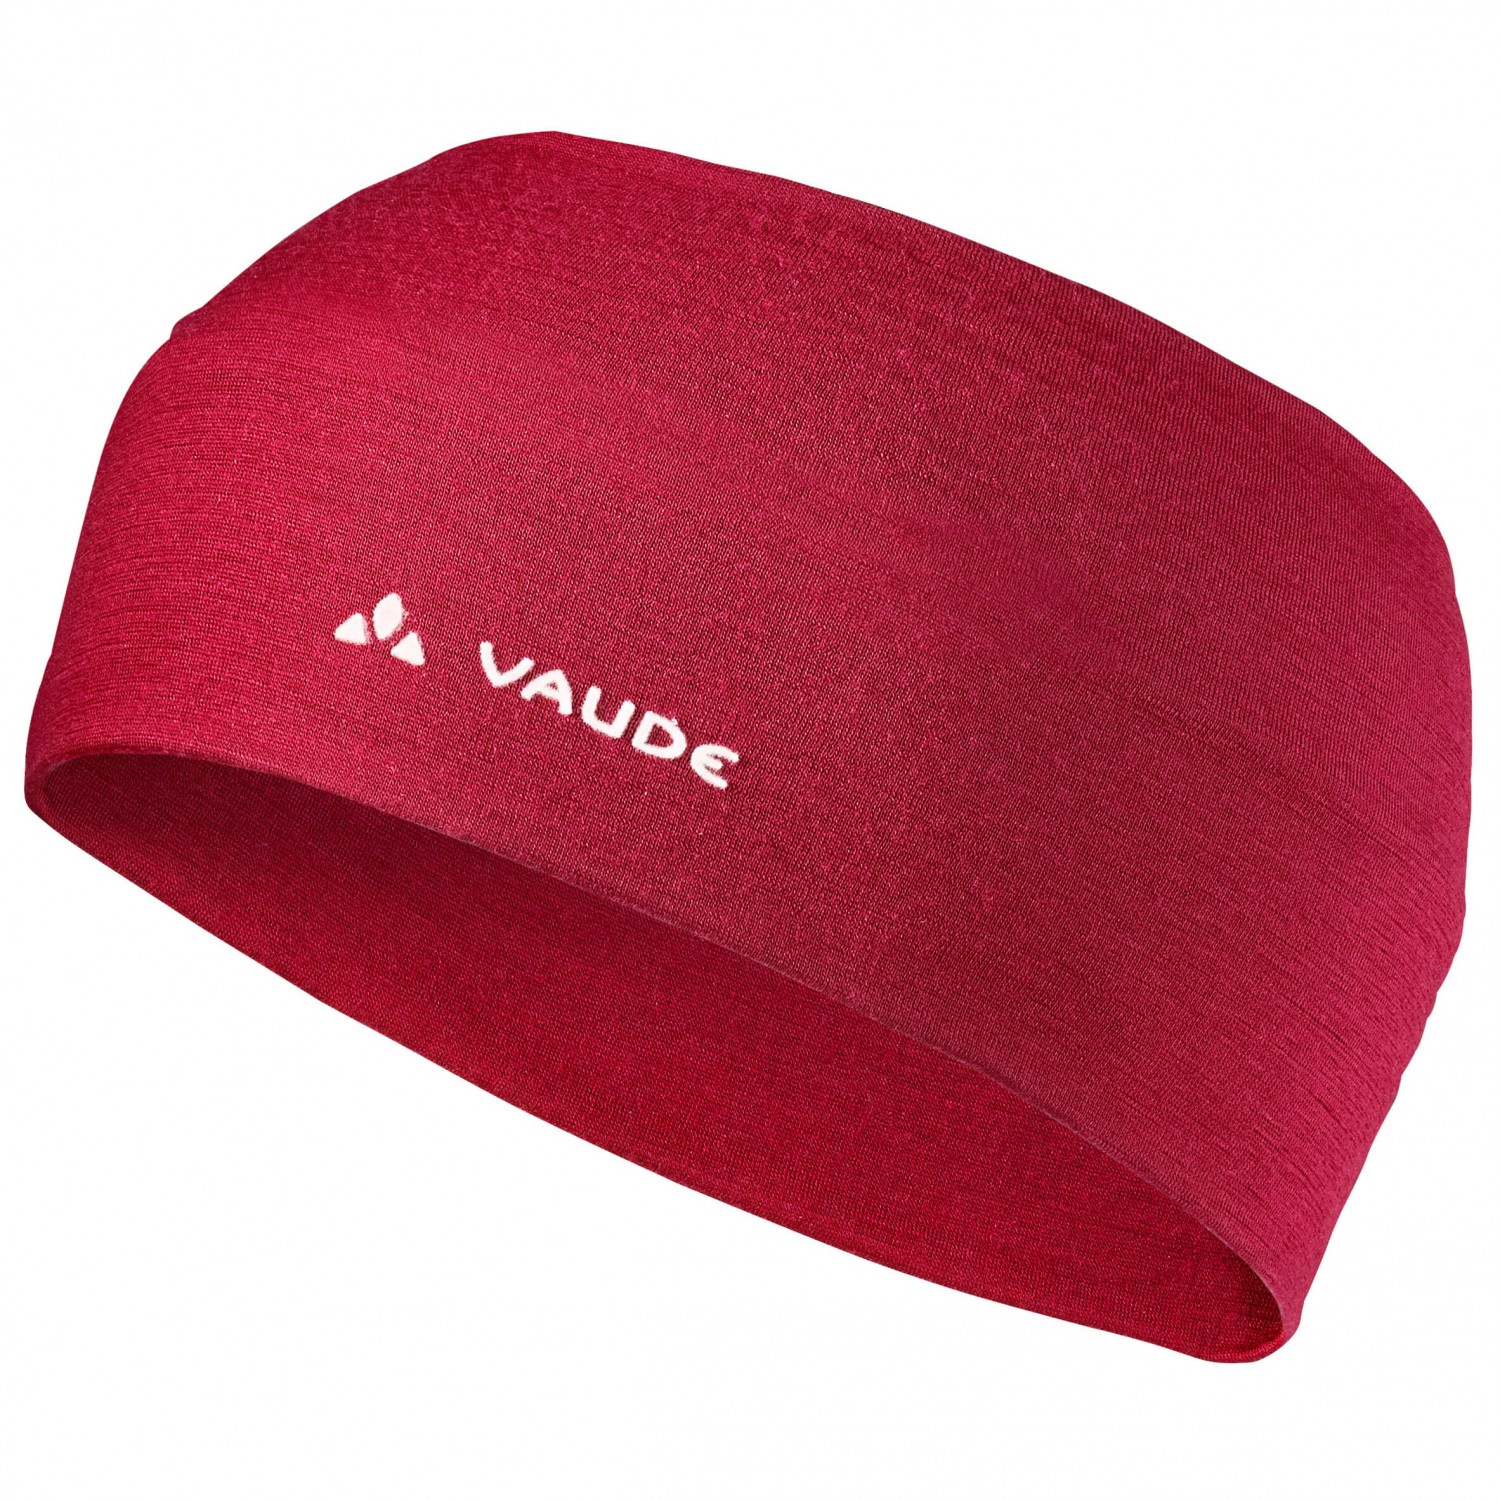 Повязка на голову Vaude Cassons Merino Headband, цвет Dark Indian Red